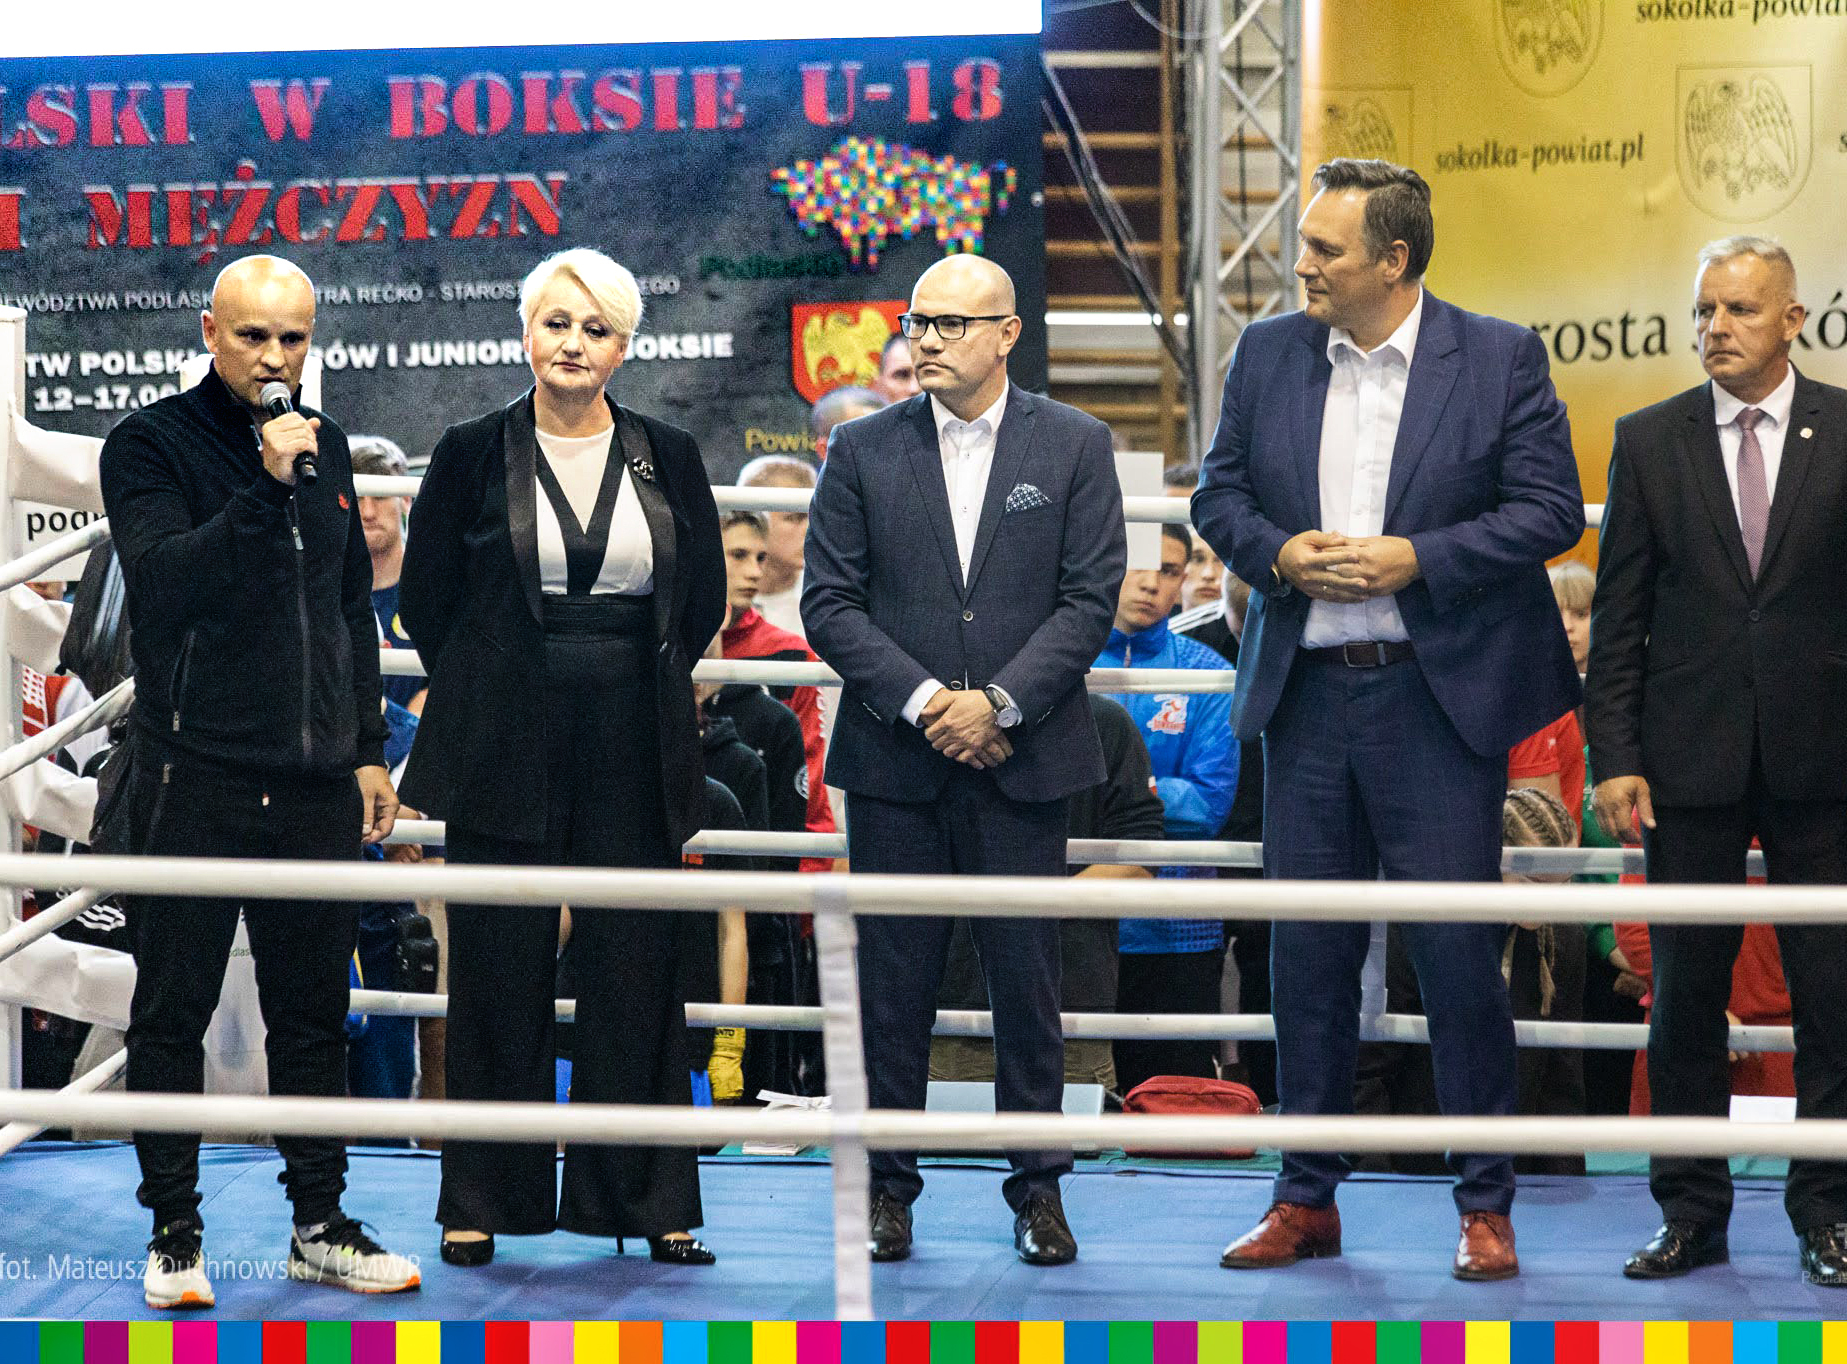 Mistrzostwa Polski w boksie U-18 kobiet i mężczyzn w Sokółce uroczyście otwarte